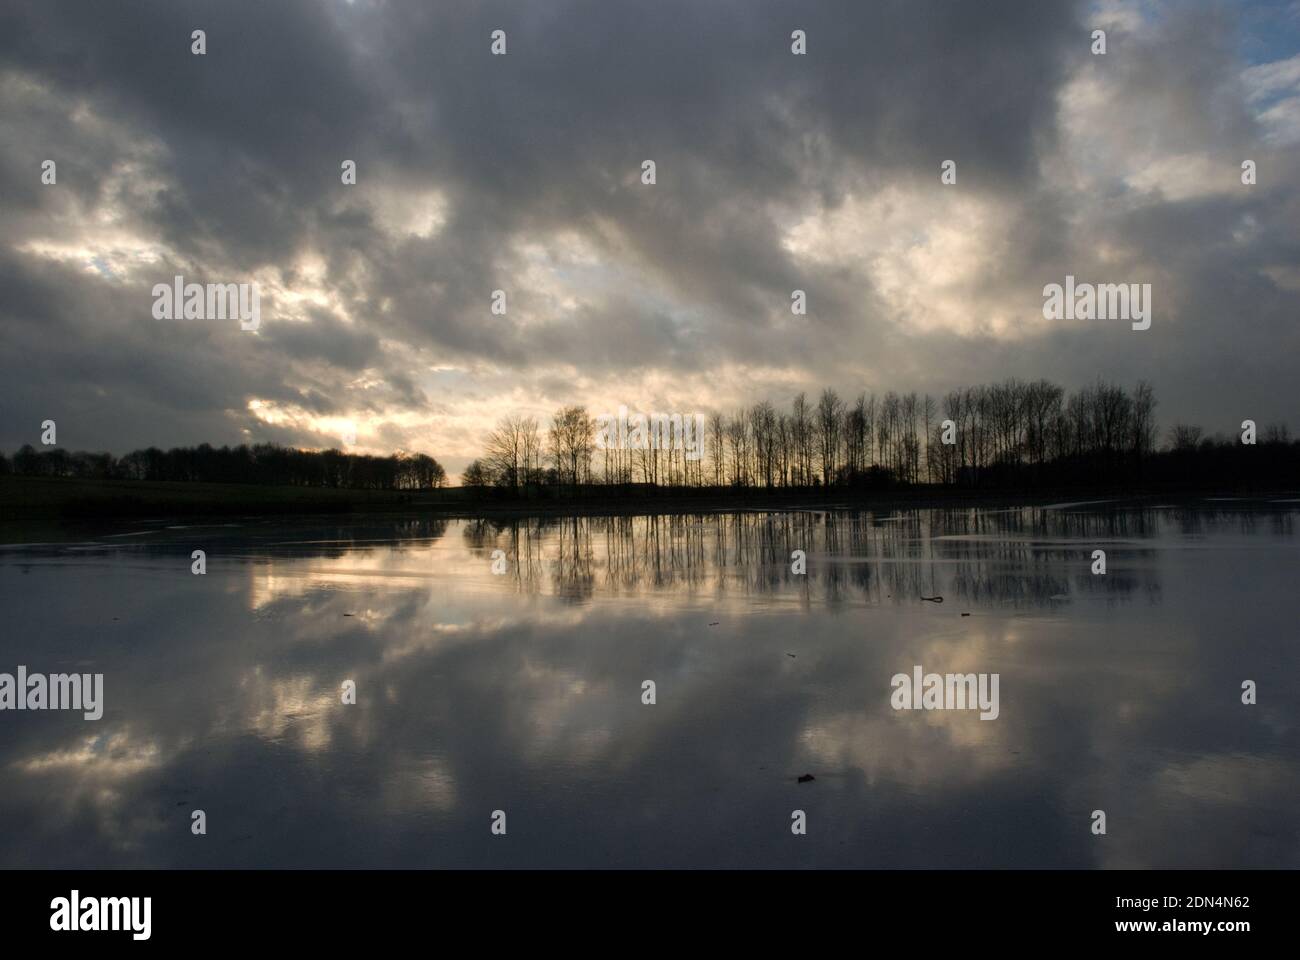 Scena invernale con una linea di alberi lungo il bordo di un lago ghiacciato con luce e nuvole in streaming da dietro gli alberi e riflesso nel ghiaccio Foto Stock